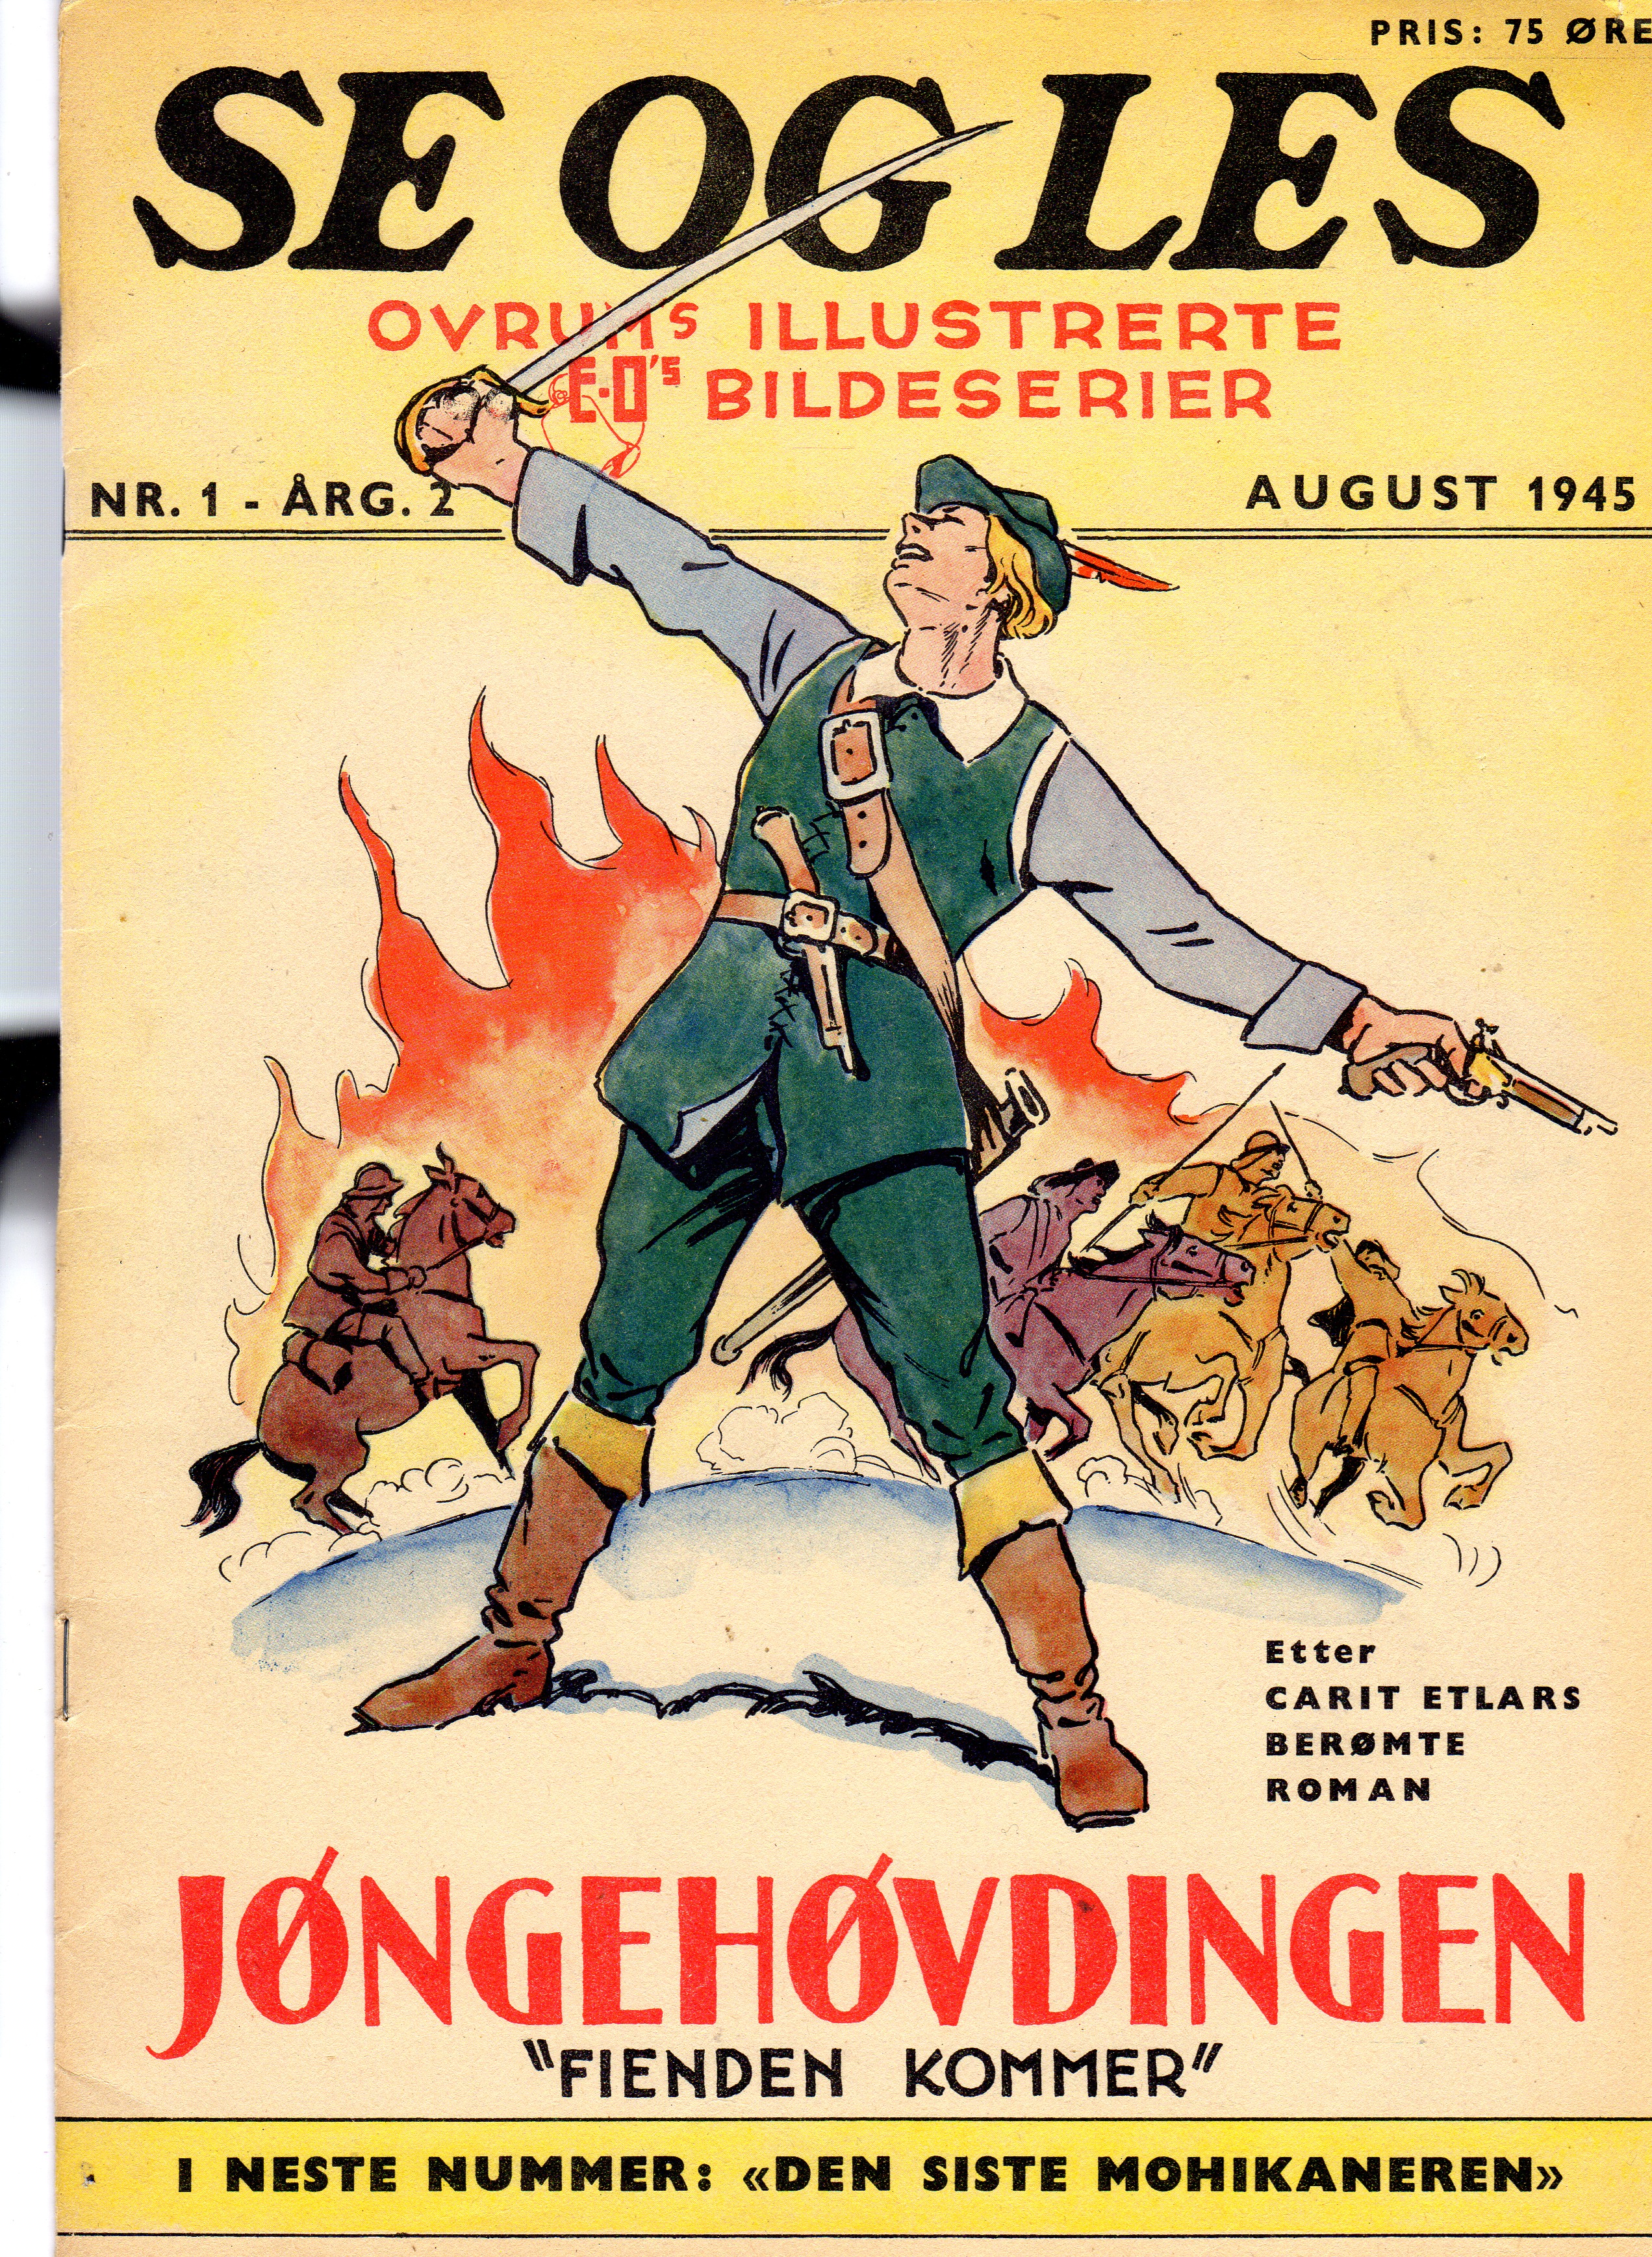 nr1 årg 2 august 1945 Jøngehøvdingen "Fienden kommer" fine